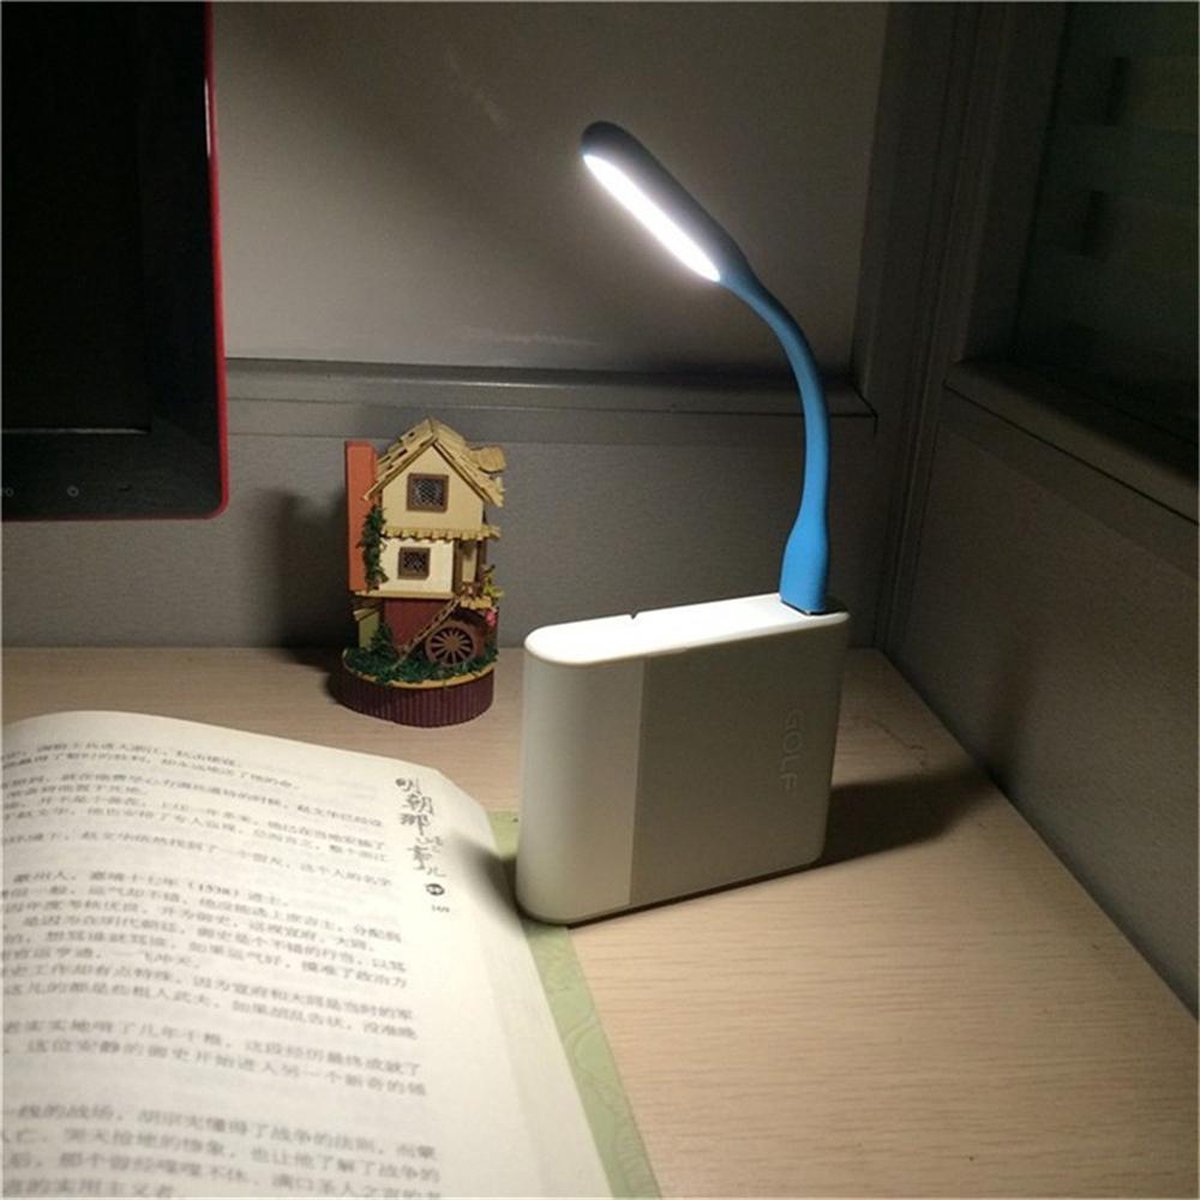 DC-USBL03-BL Lampe LED USB flexible - Lampe de lecture pour ordinateur  portable - Bleu